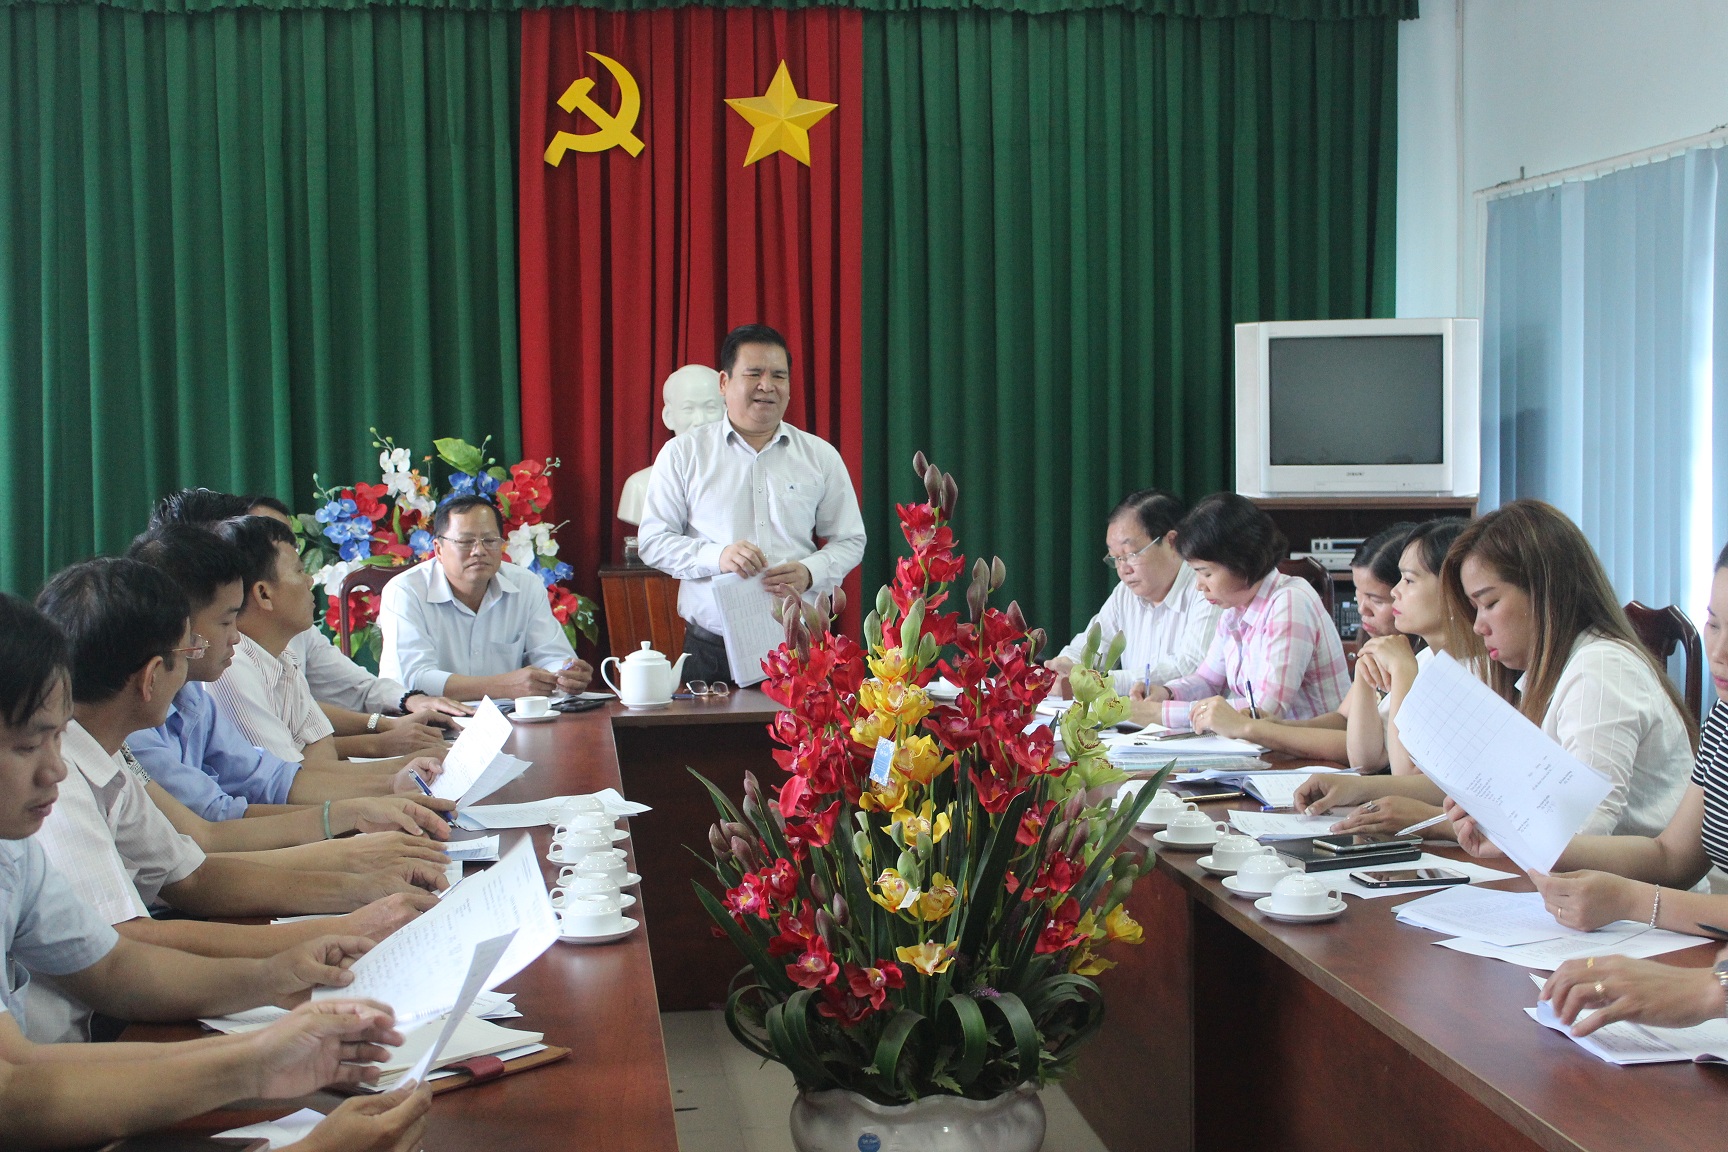 Ông Nguyễn Xuân Quang, Cục trưởng Cục Thống kê, Phó trưởng Ban thường trực Ban Chỉ đạo Tổng điều tra dân số và nhà ở tỉnh phát biểu tại cuộc họp